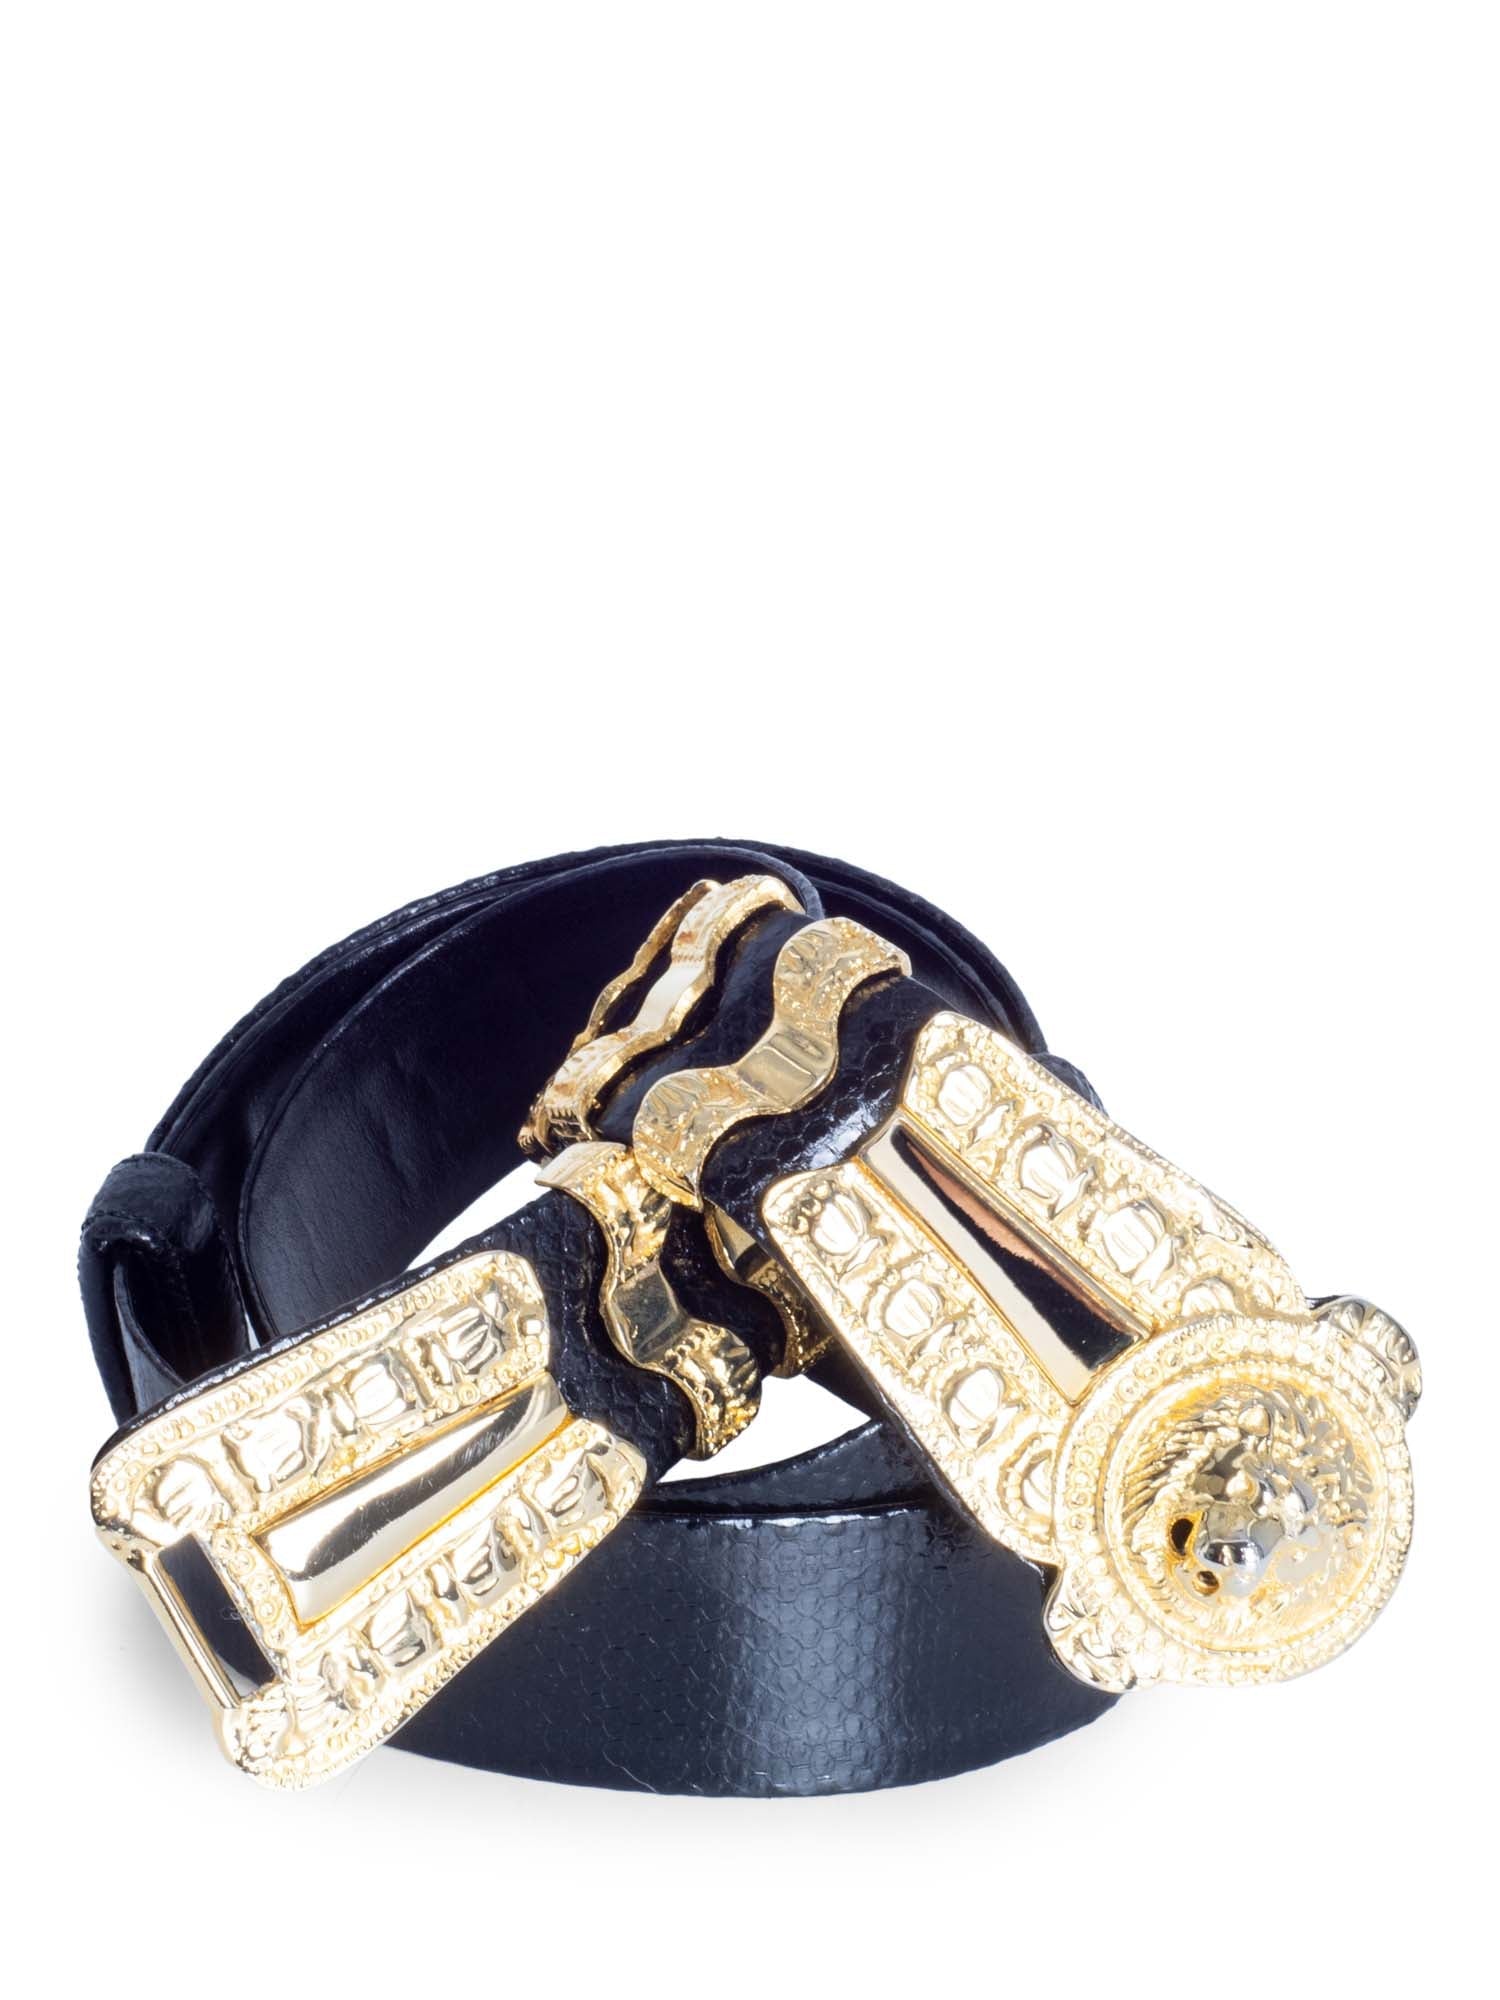 Judith Leiber Vintage Snakeskin Lion Head Adjustable Belt Black Gold